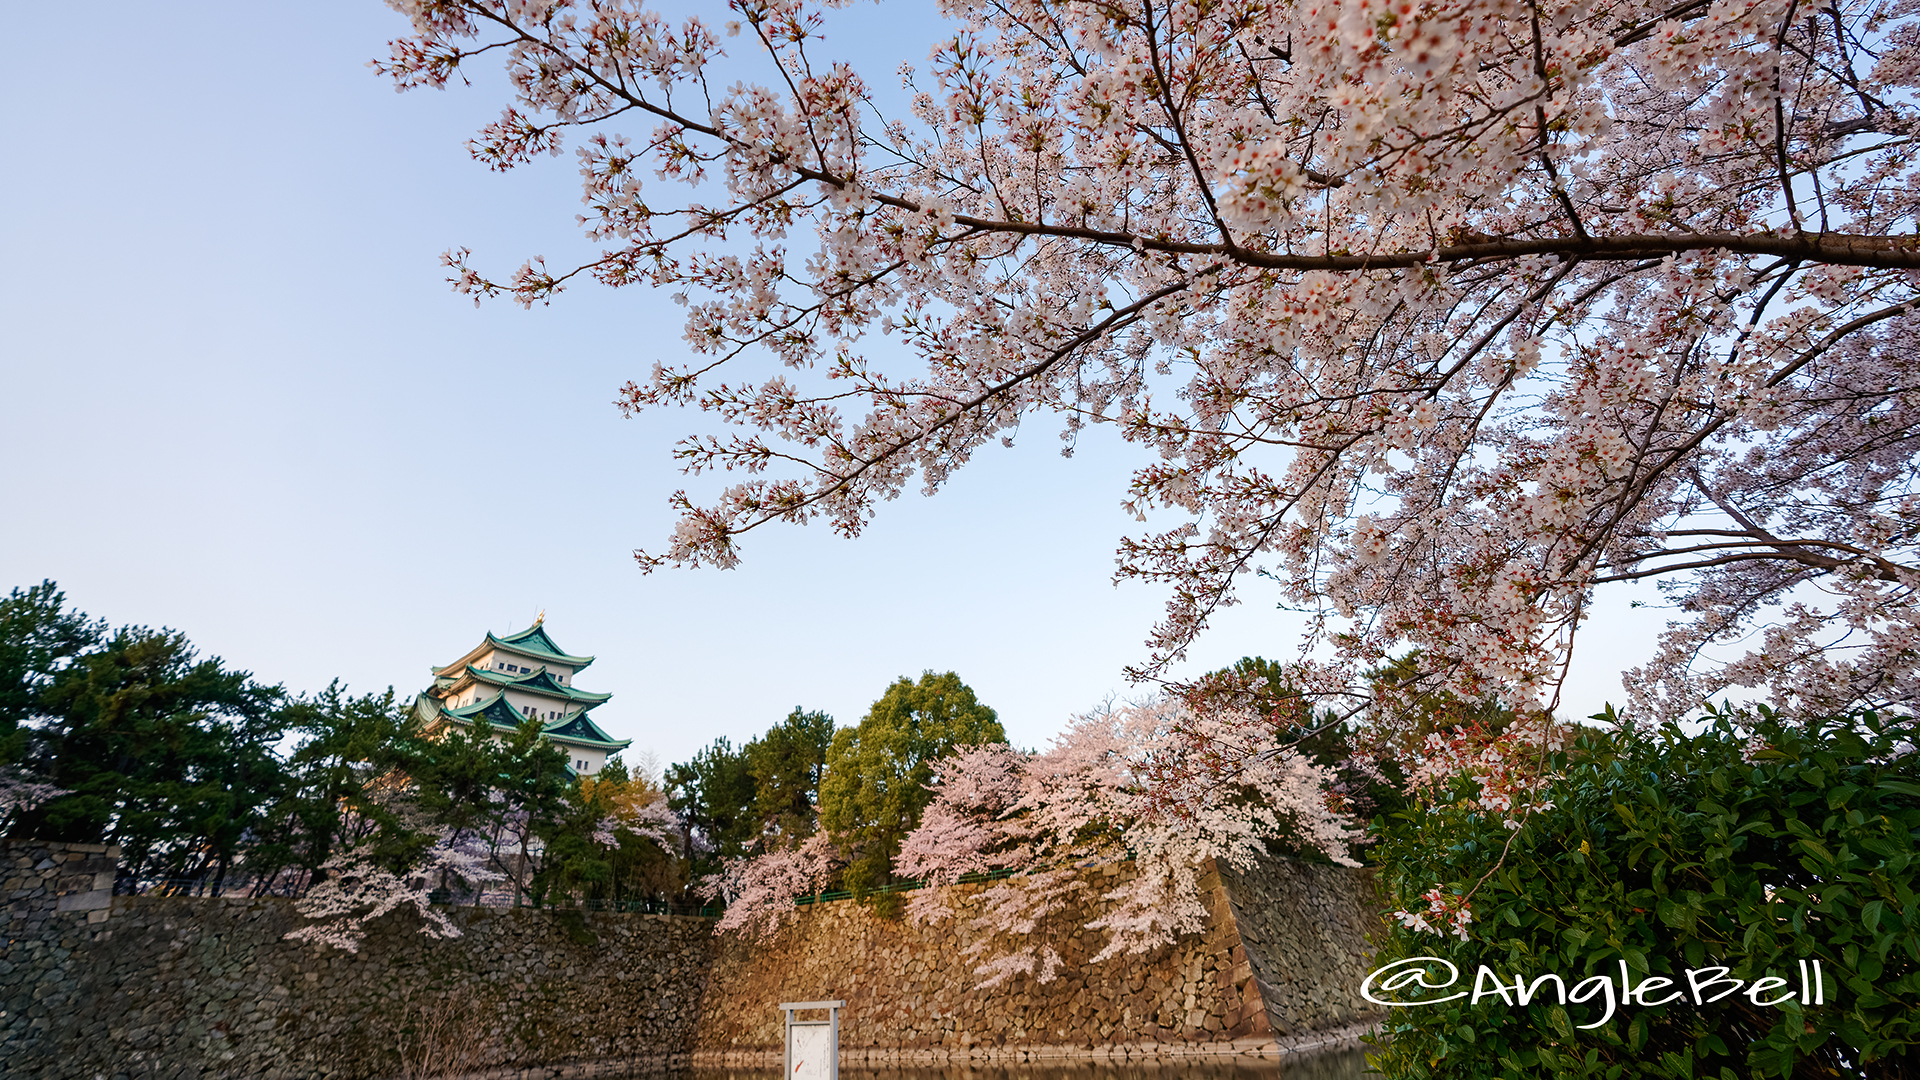 名城公園北園 藤の回廊広場から見る 桜と名古屋城 March 2018